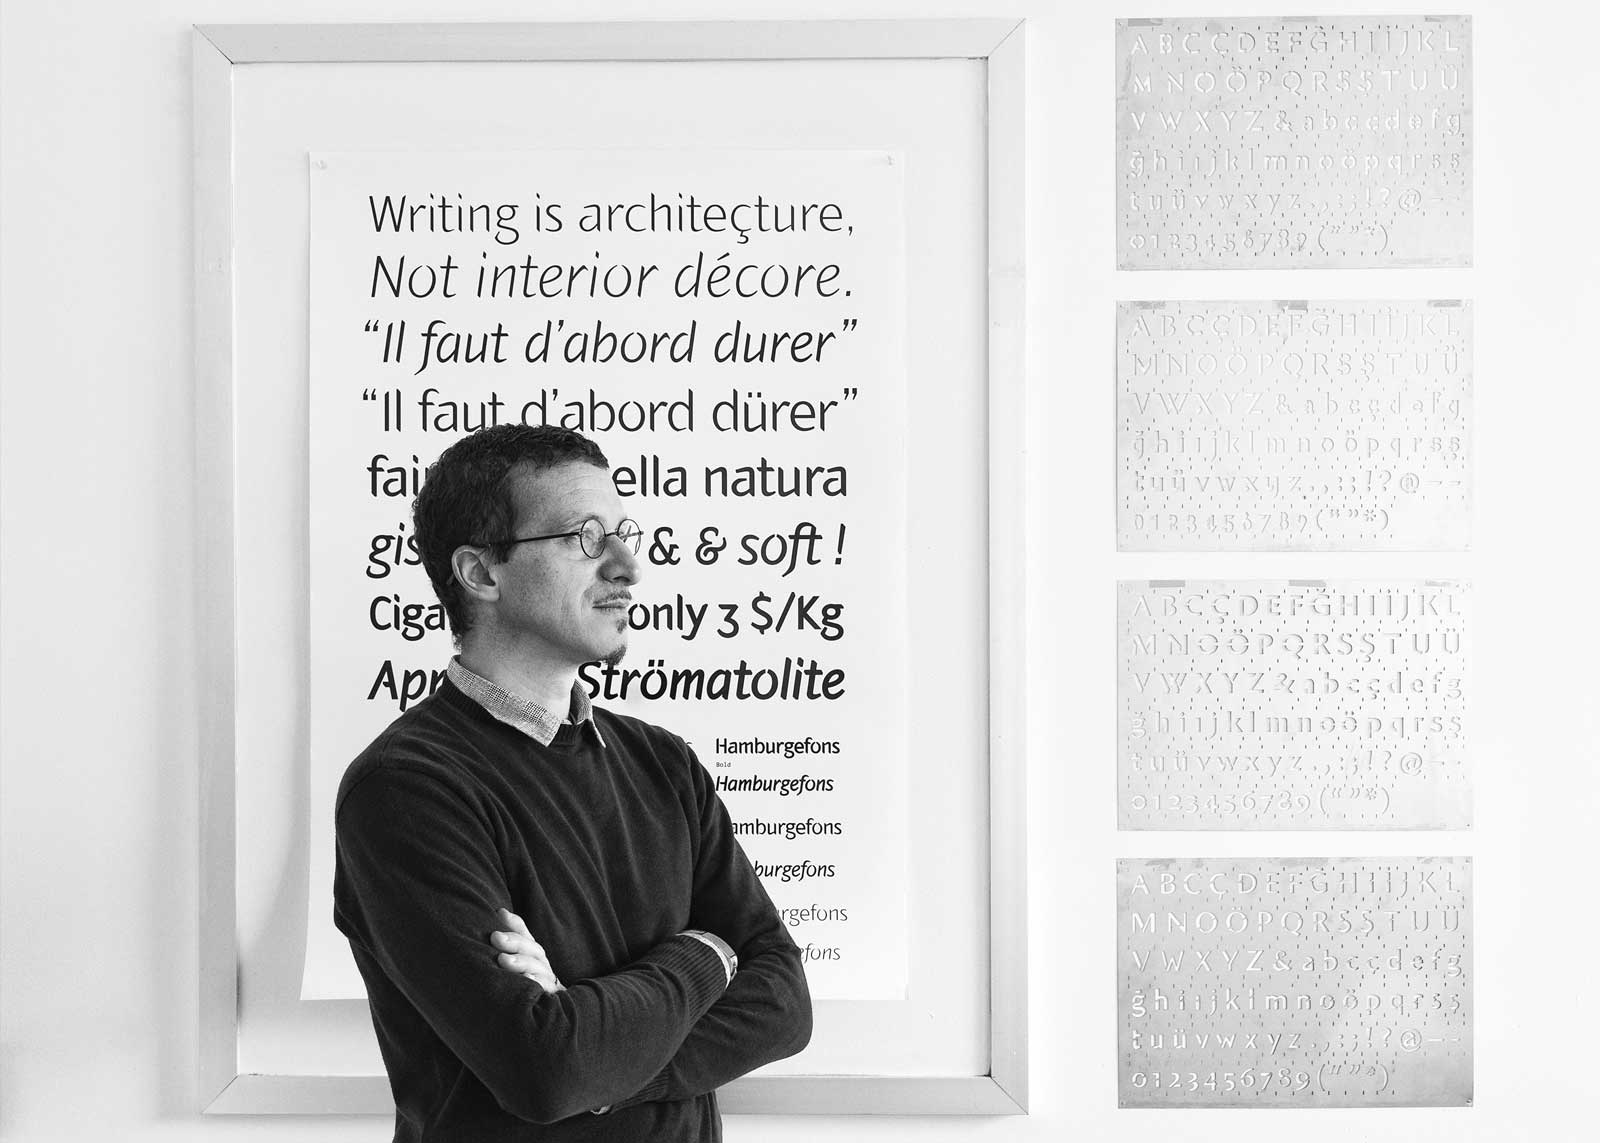 Alessandro Segalini designed the typeface 